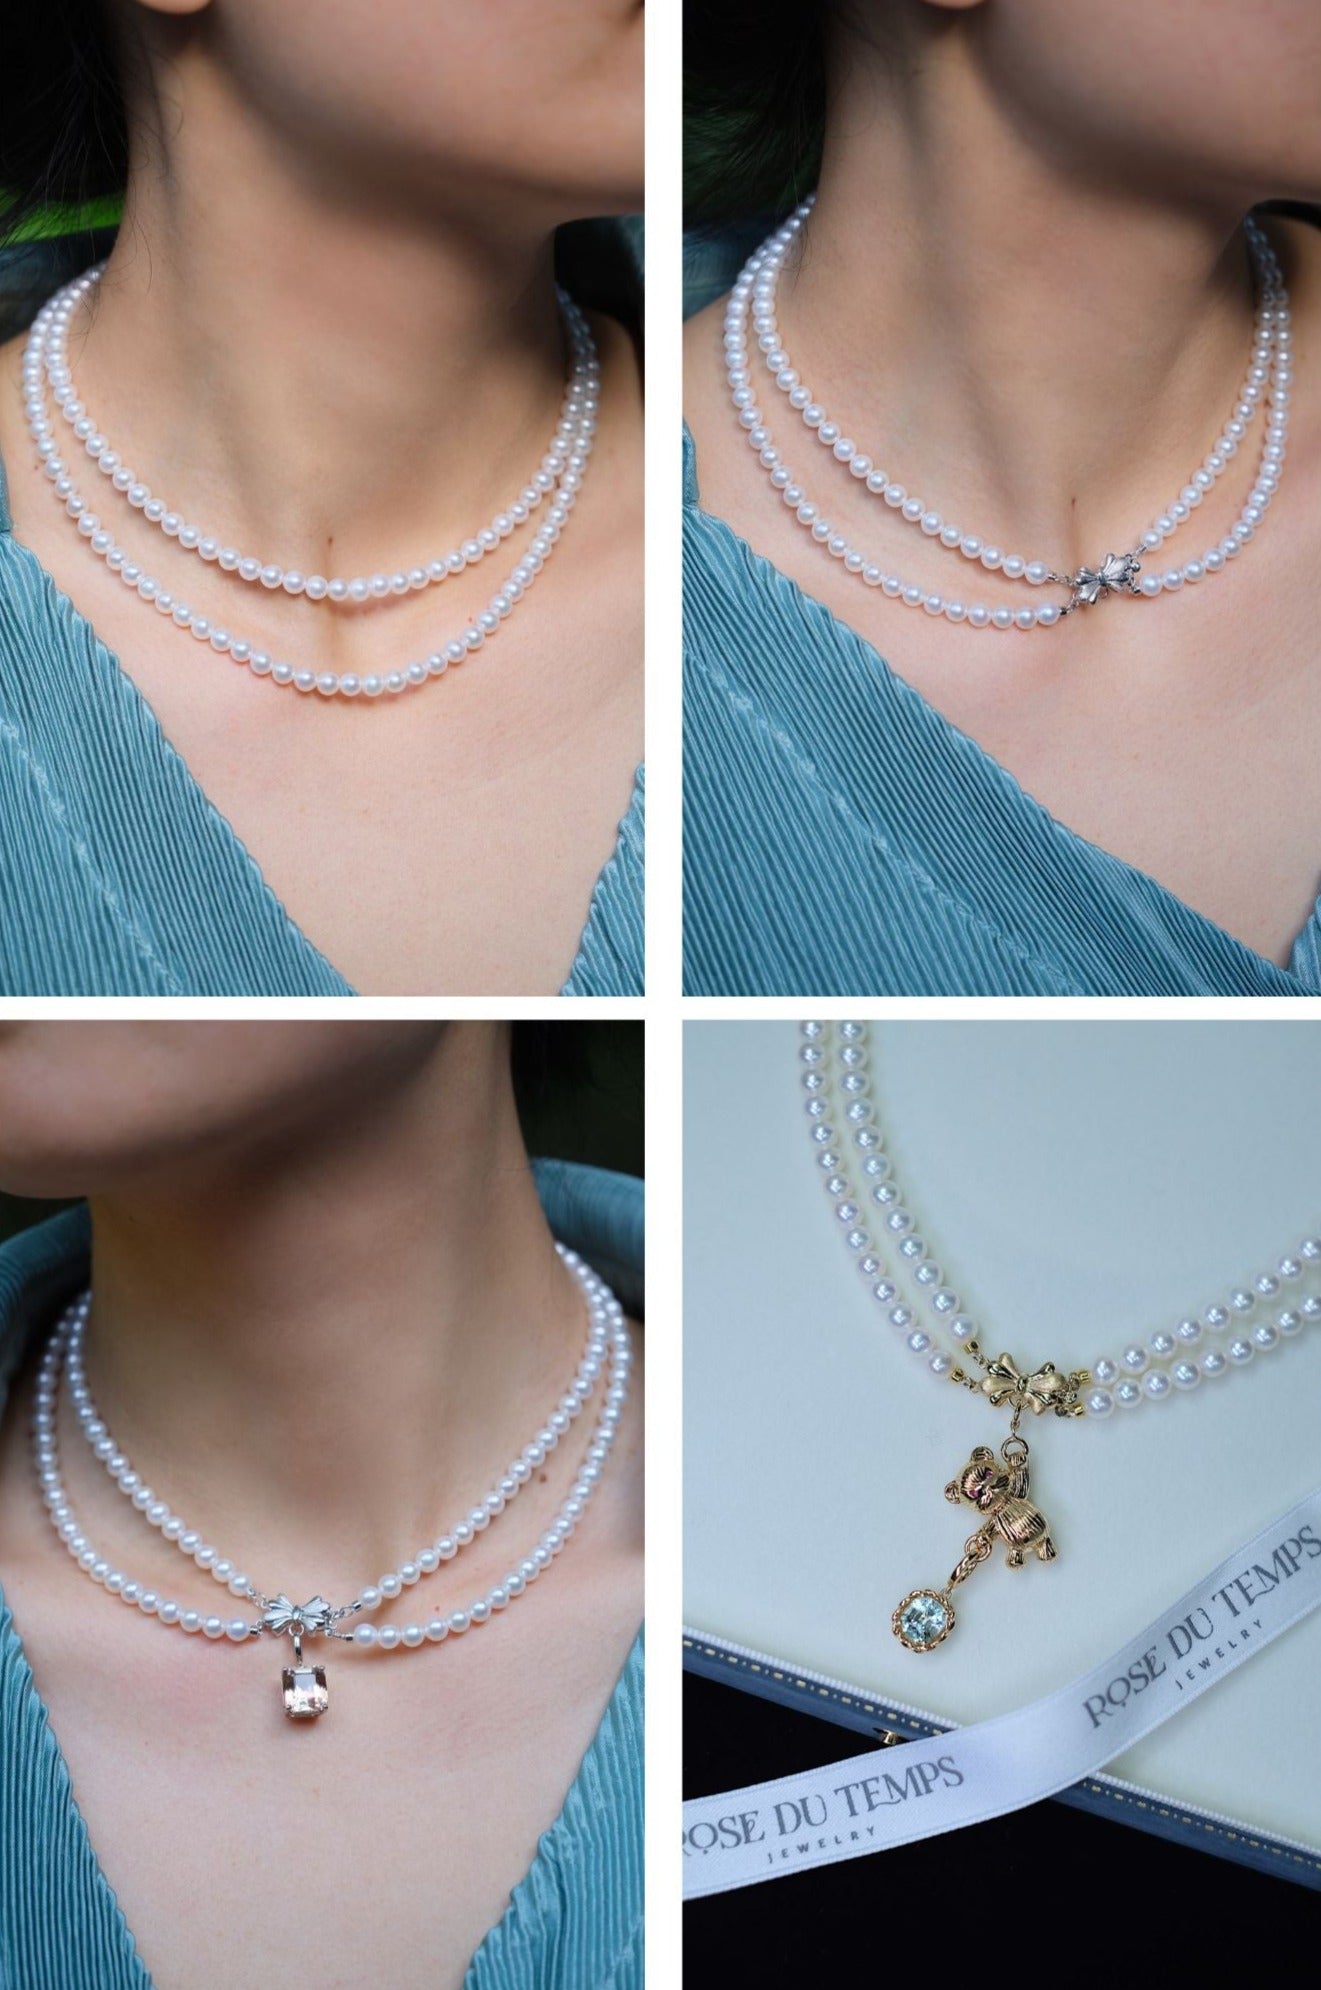 Necklace – Rose Du Temps